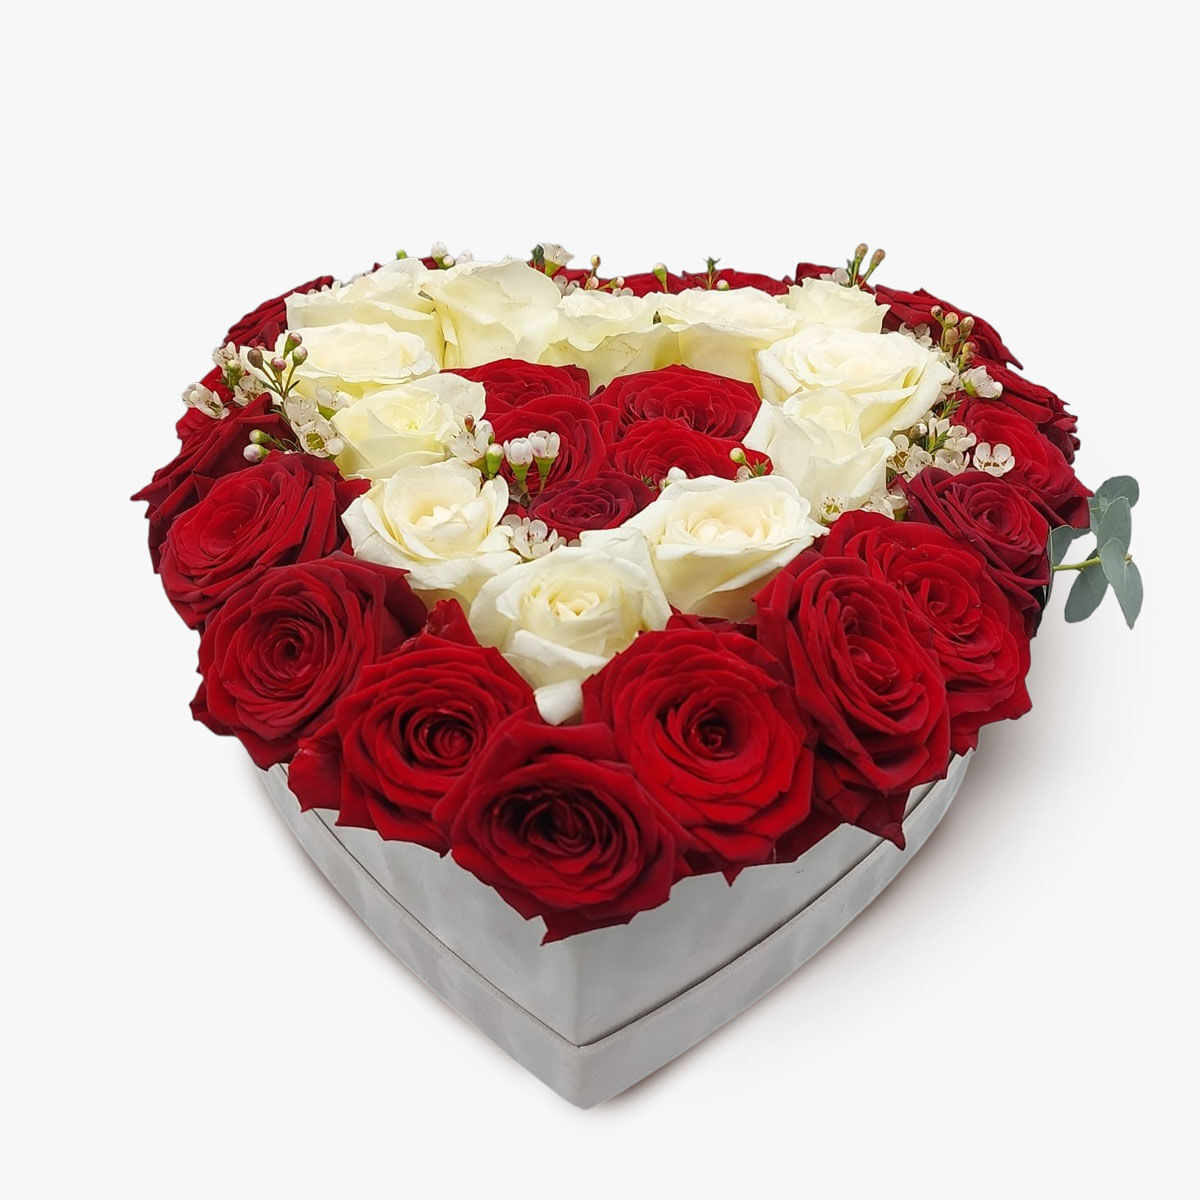 Aranjament in cutie inima cu 37 de trandafiri albi si rosii